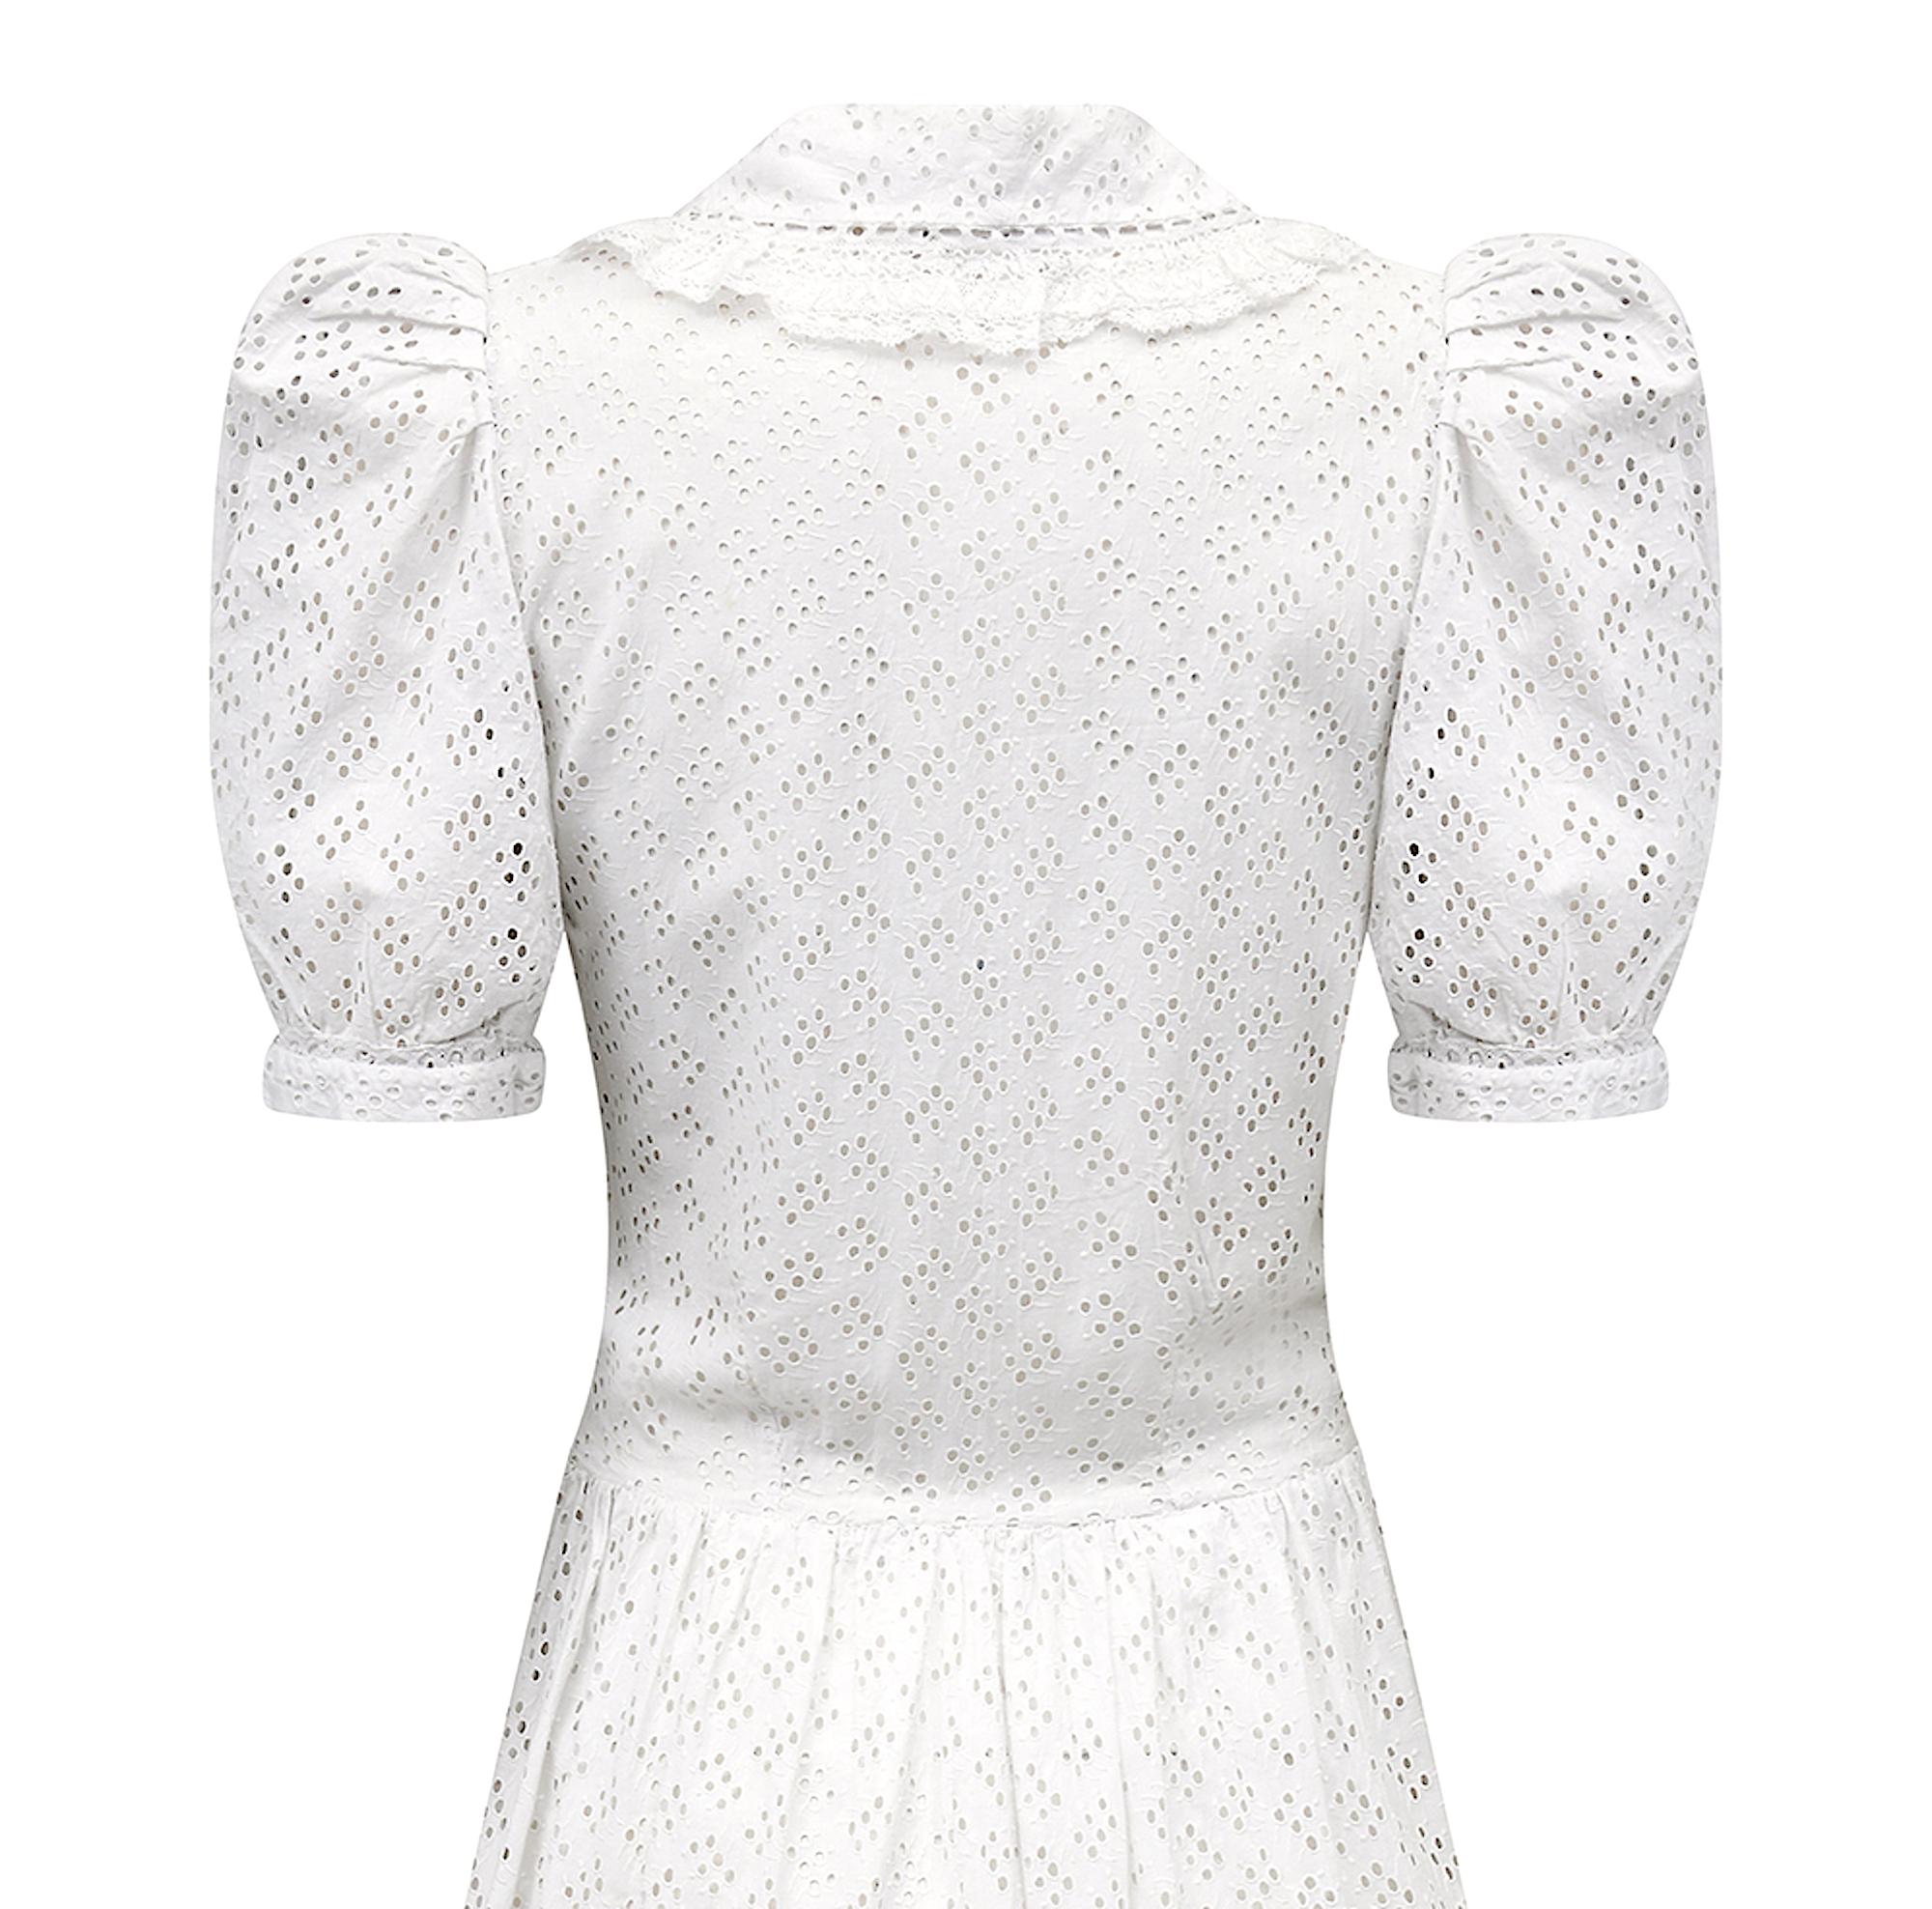 1940 white dress